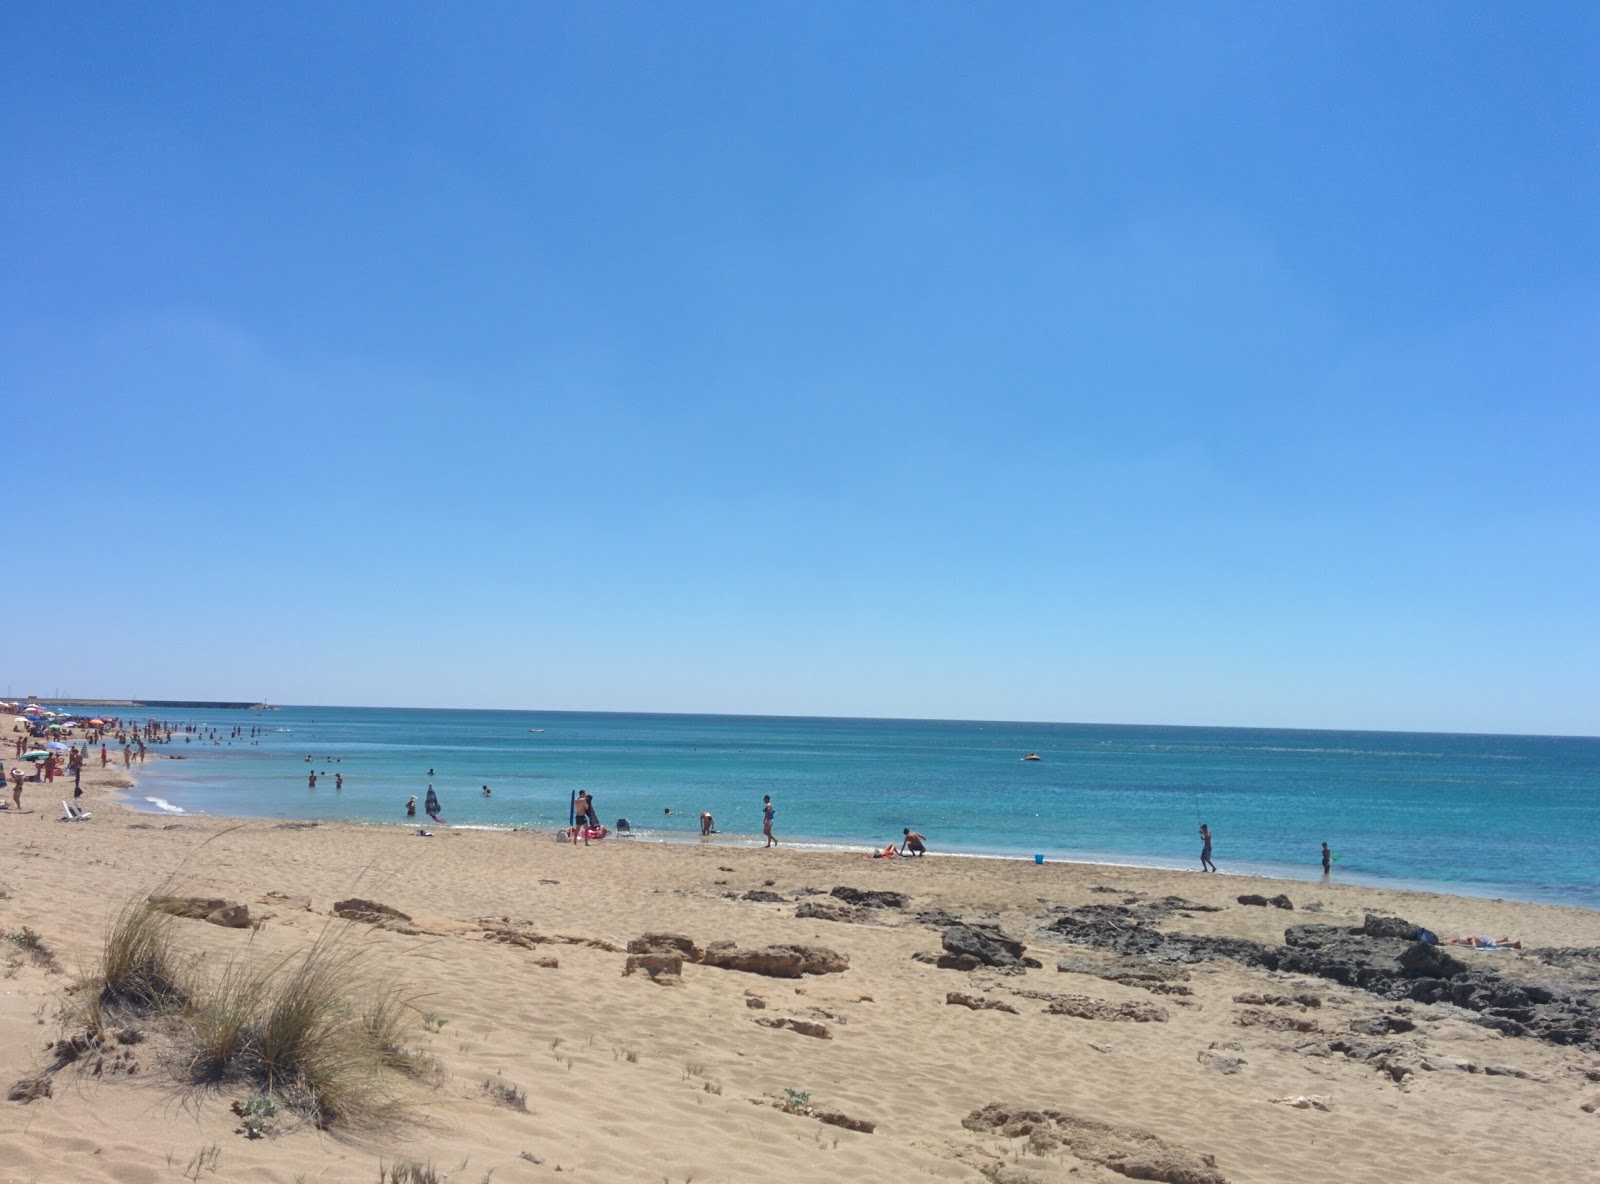 Spiaggia d'Ayala'in fotoğrafı parlak kum yüzey ile